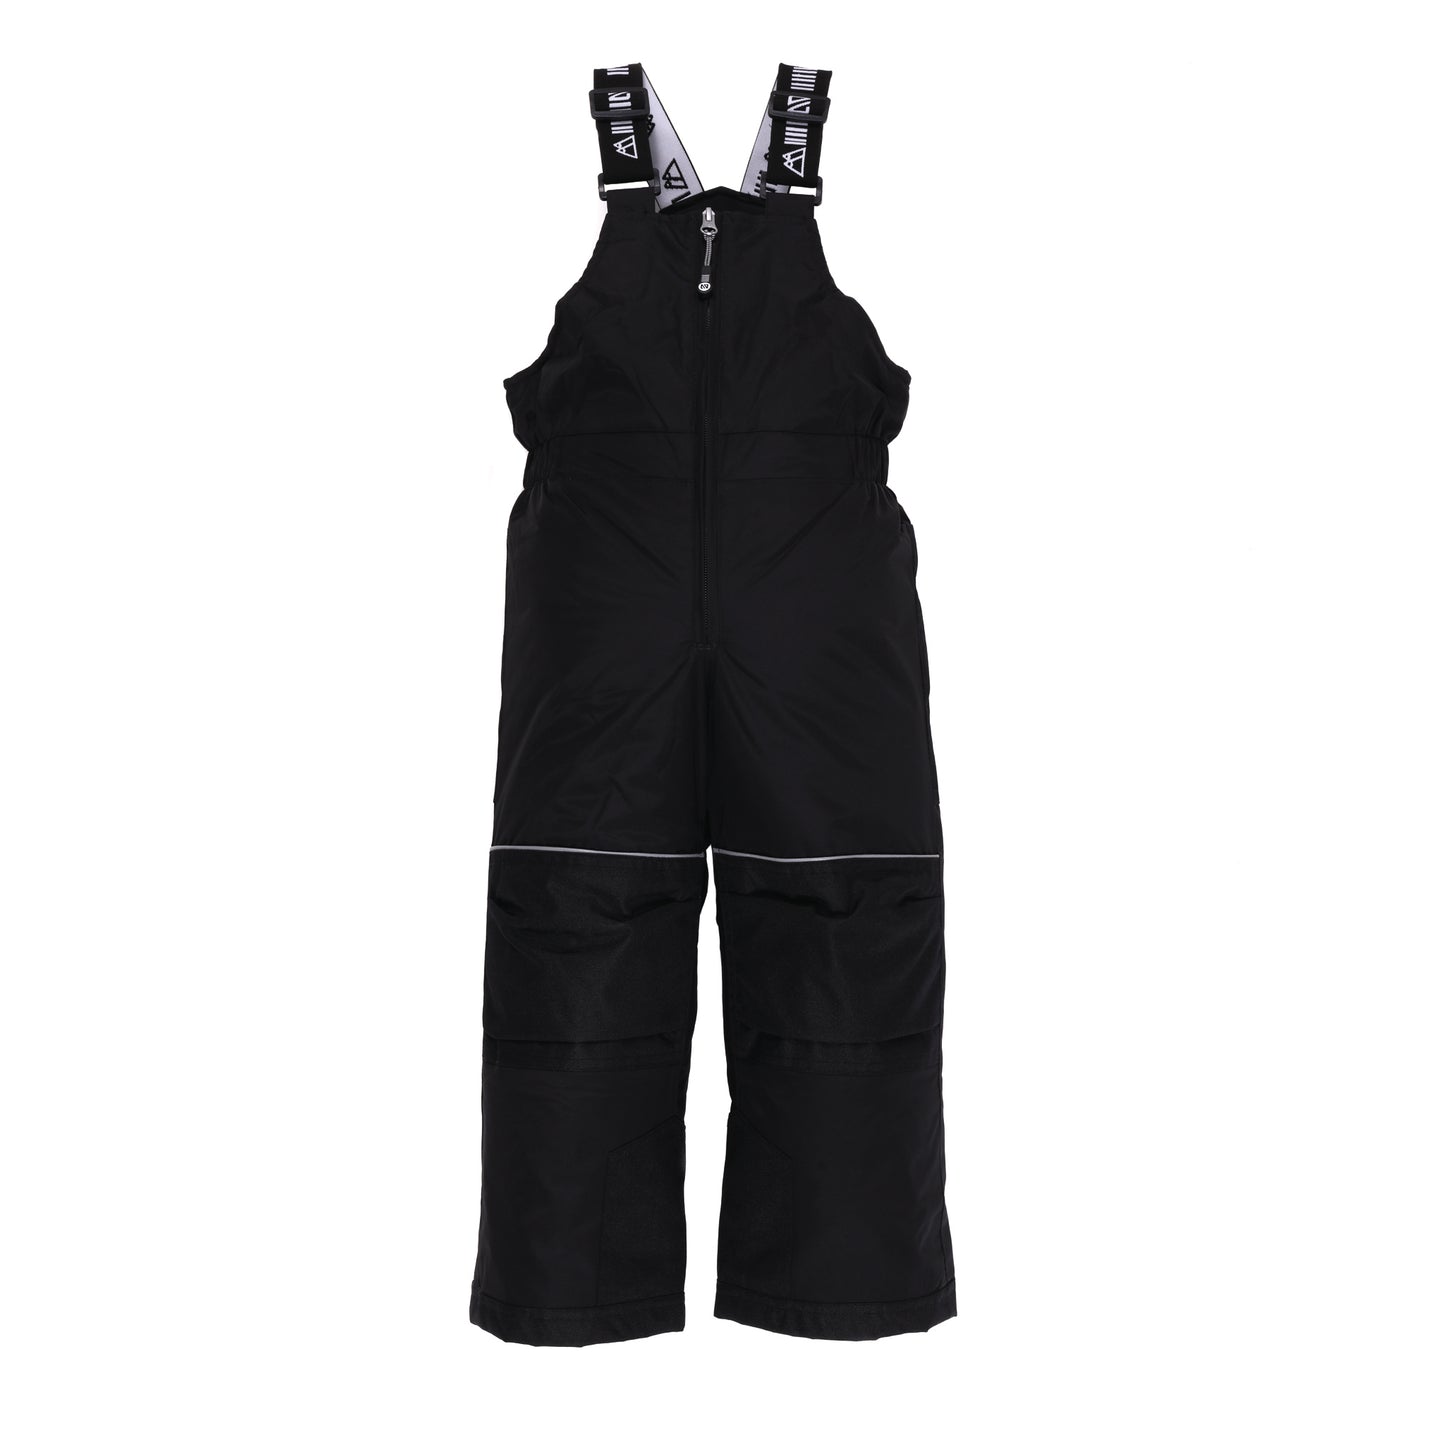 Pantalon de neige unisexe noir BFPA200 - 2 à 14 ans